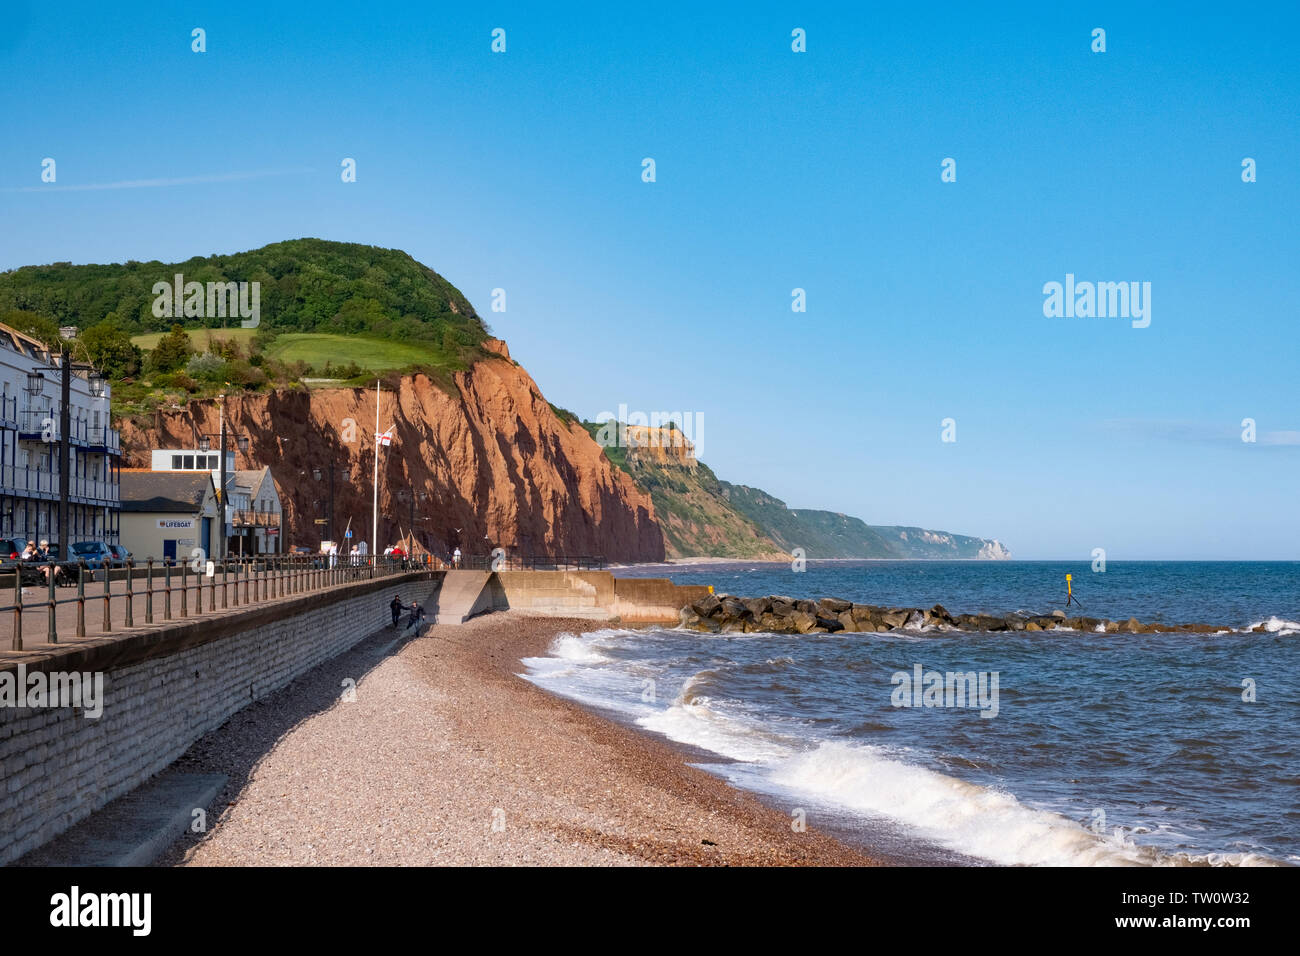 Sidmouth, Devon, Reino Unido. Bonita ciudad costera en la costa Jurásica con playa de guijarros y espectaculares acantilados de arenisca roja Foto de stock